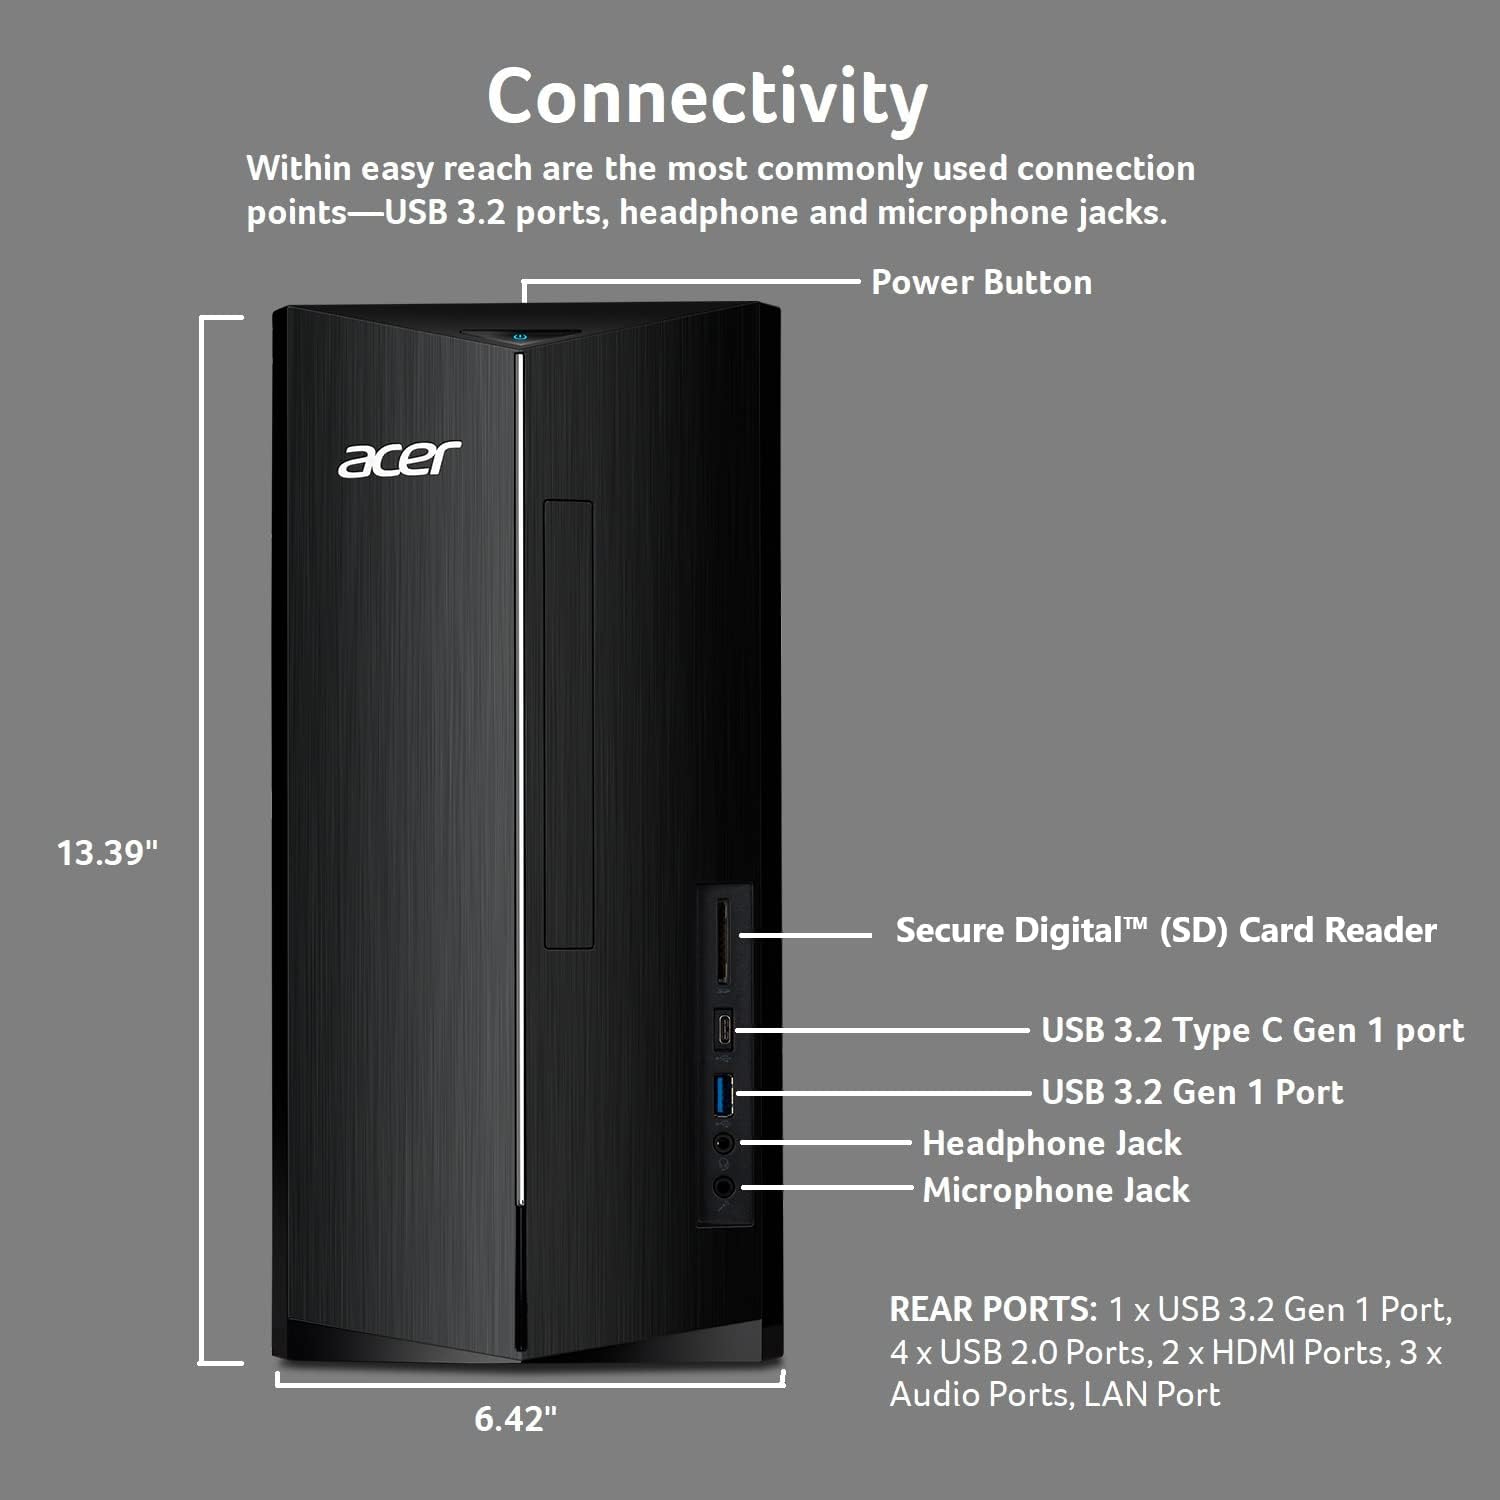 Acer Aspire TC-1760-UA92 Desktop | 12th Gen Intel Core i5-12400 6-Core Processor | 12GB 3200MHz DDR4 | 512GB NVMe M.2 SSD | 8X DVD | Intel Wireless Wi-Fi 6 AX201 | Bluetooth 5.2 | Windows 11 Home